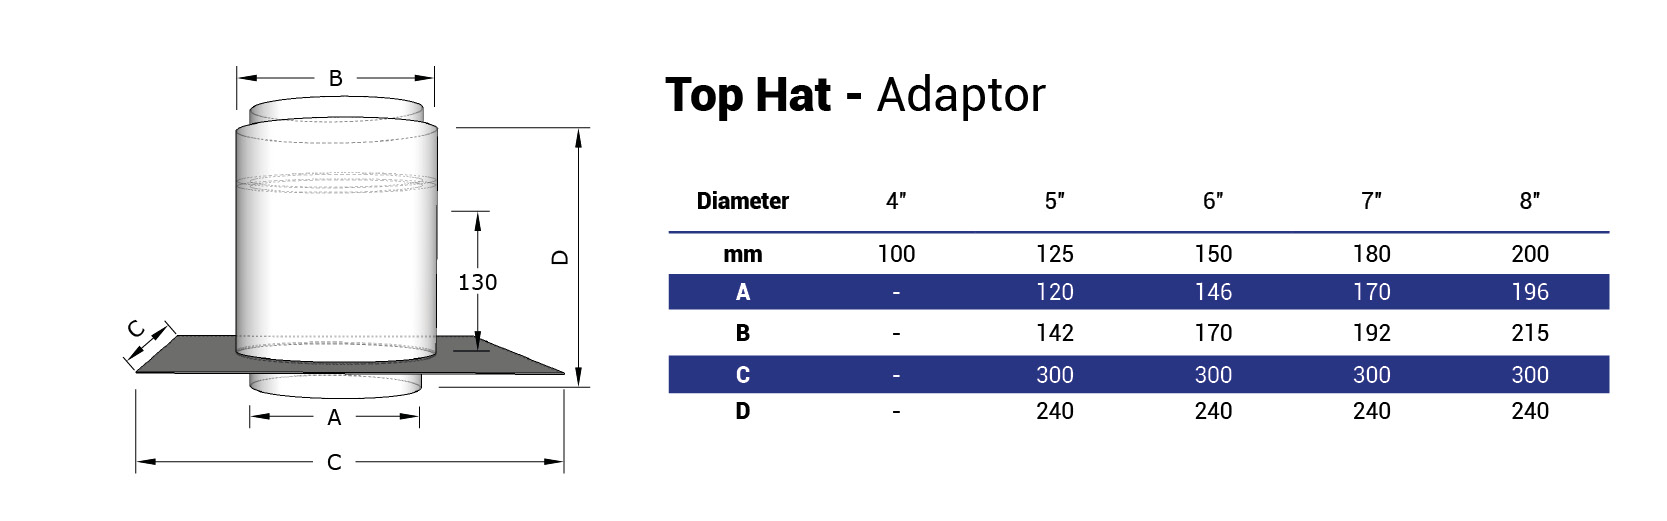 Top Hat Adaptor